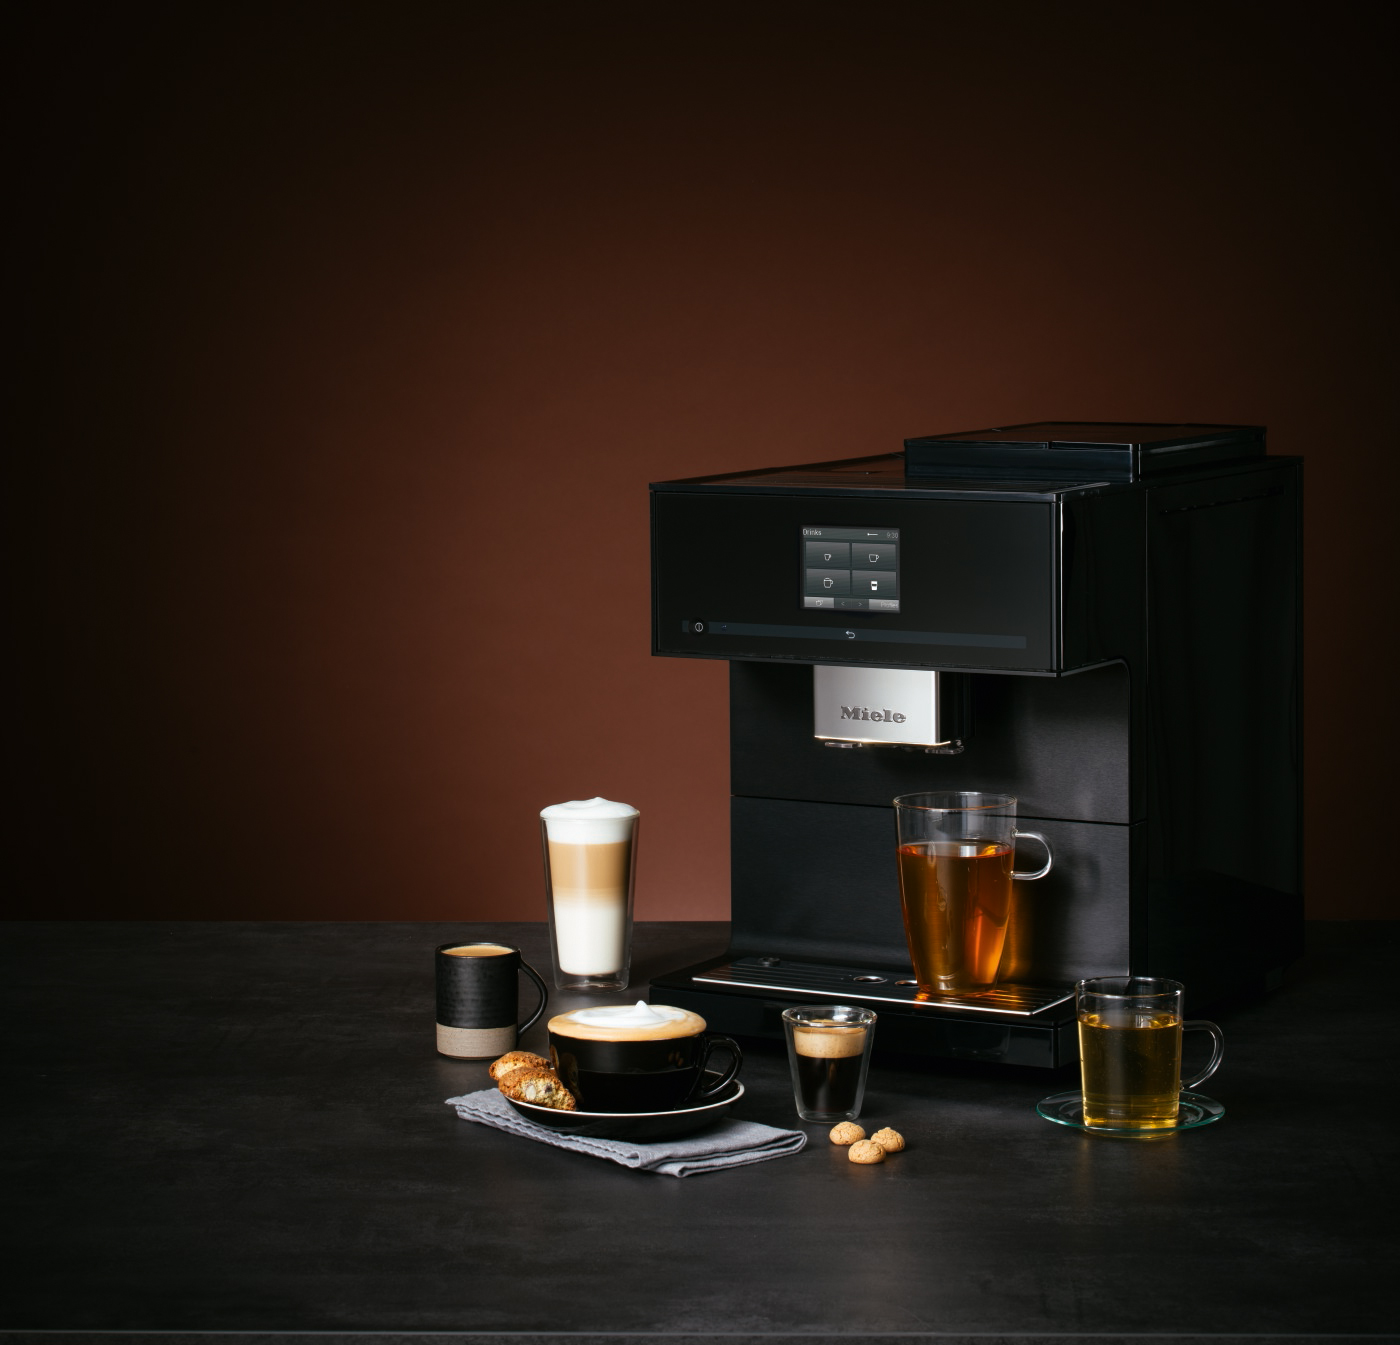 La nouvelle machine à café automatique de Miele offre encore davantage de confort et une diversité de saveurs inédite